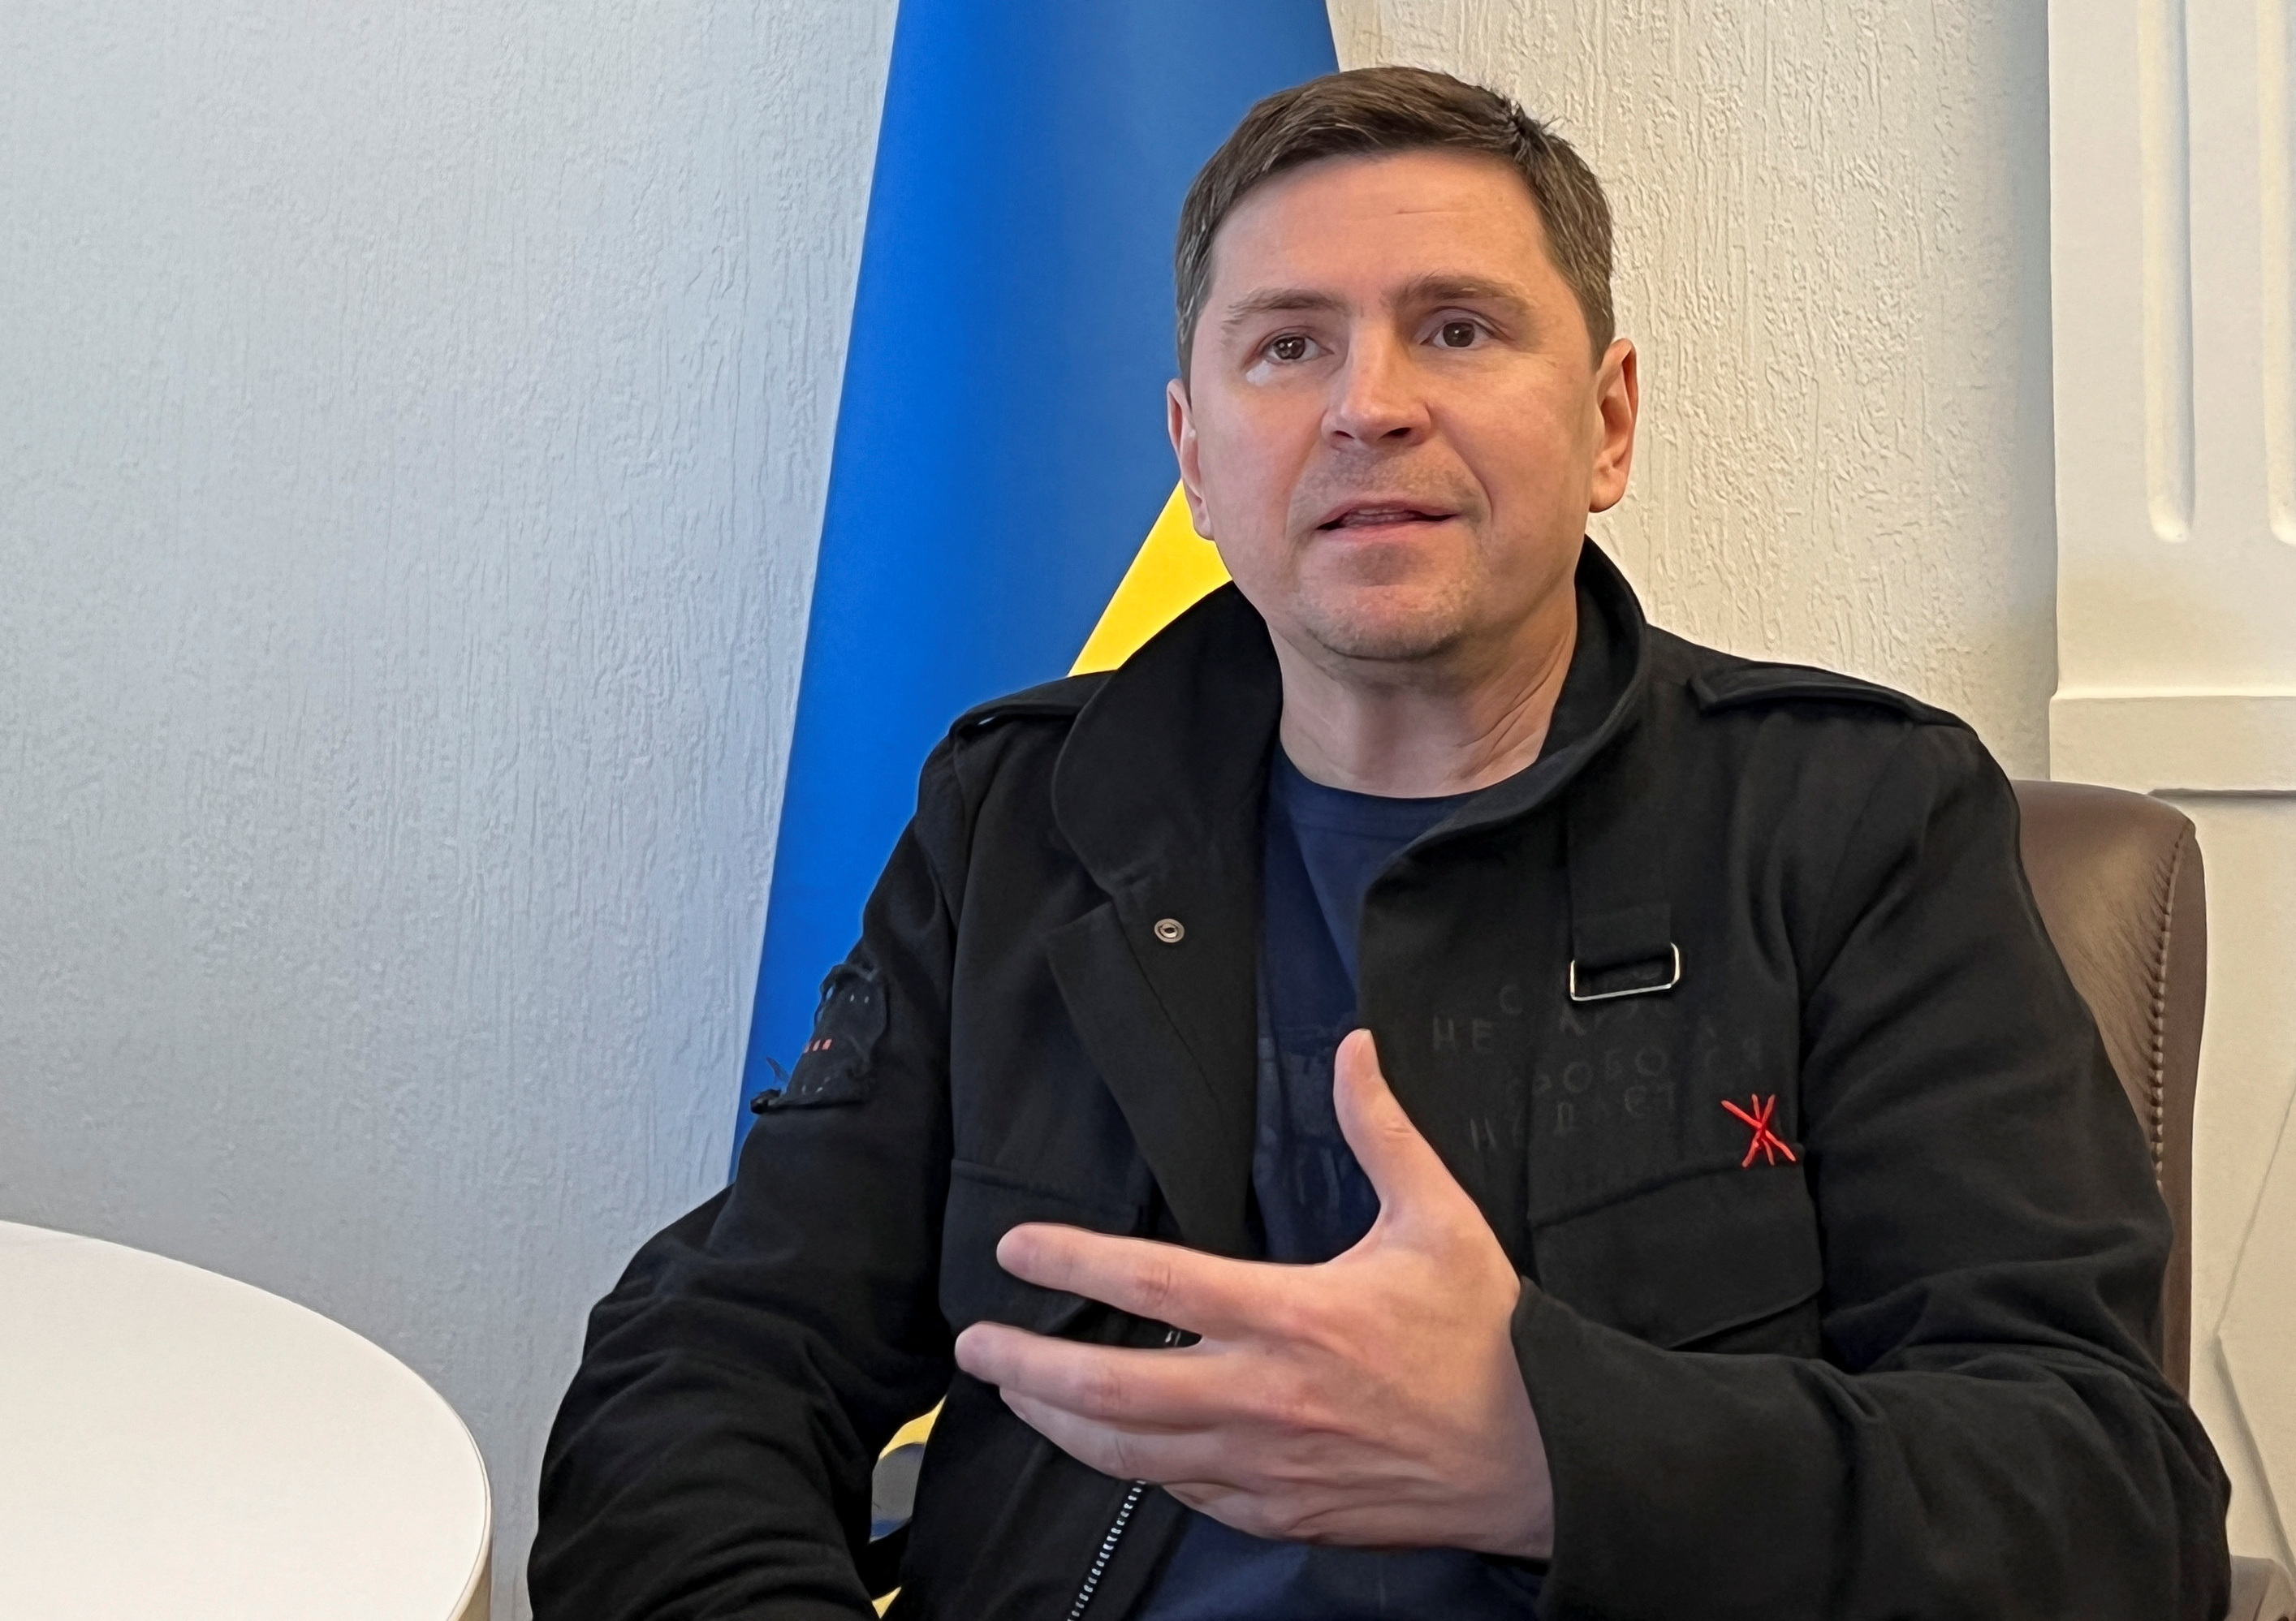 Political advisor of Ukrainian President Podolyak speaks during an interview in Kyiv